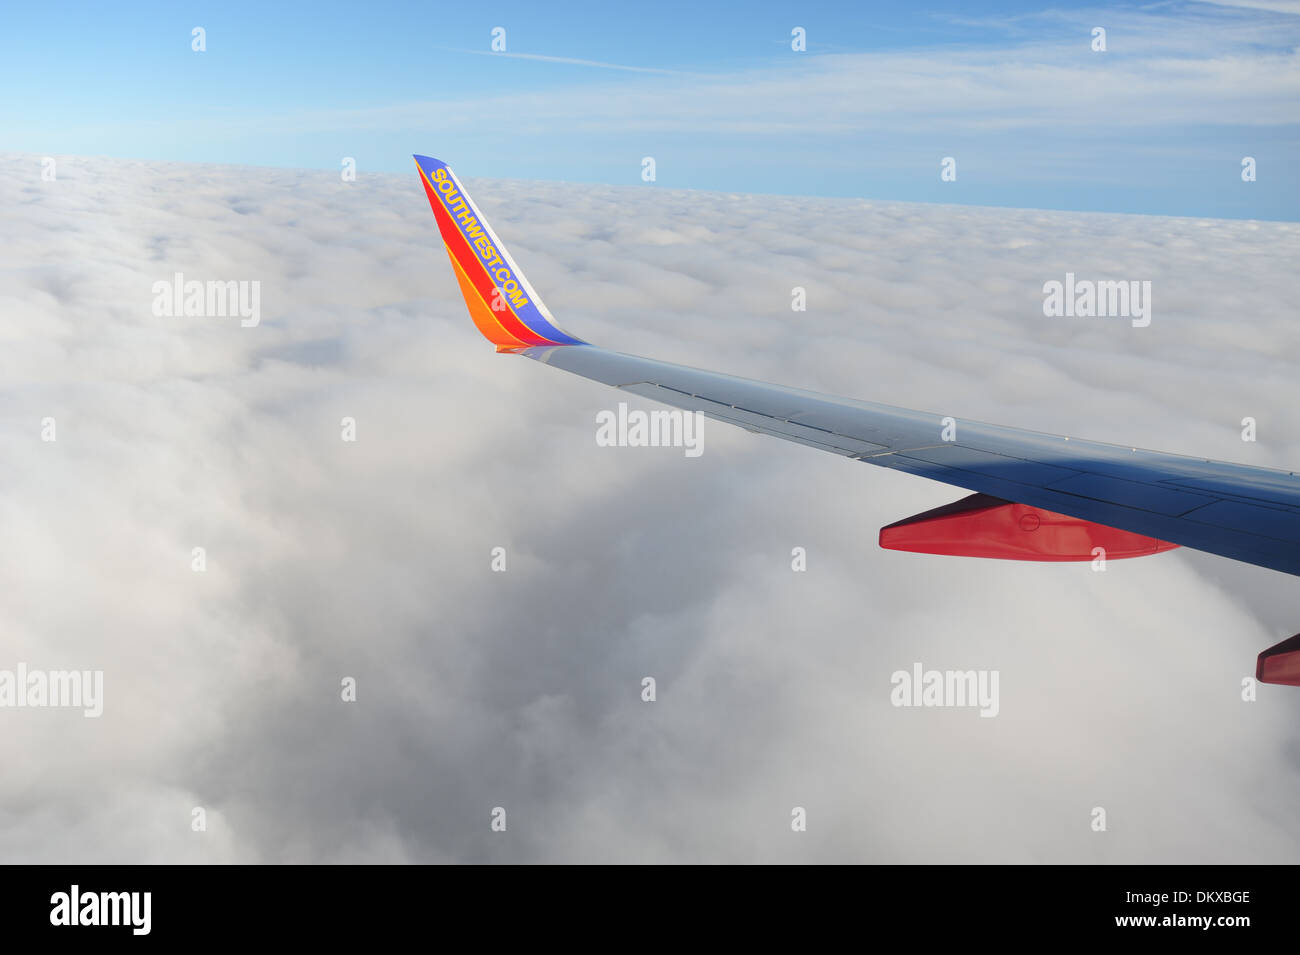 Southwest Airlines ala con aletta sul parafango di Boeing 737-700 jet in volo sopra le nuvole Foto Stock